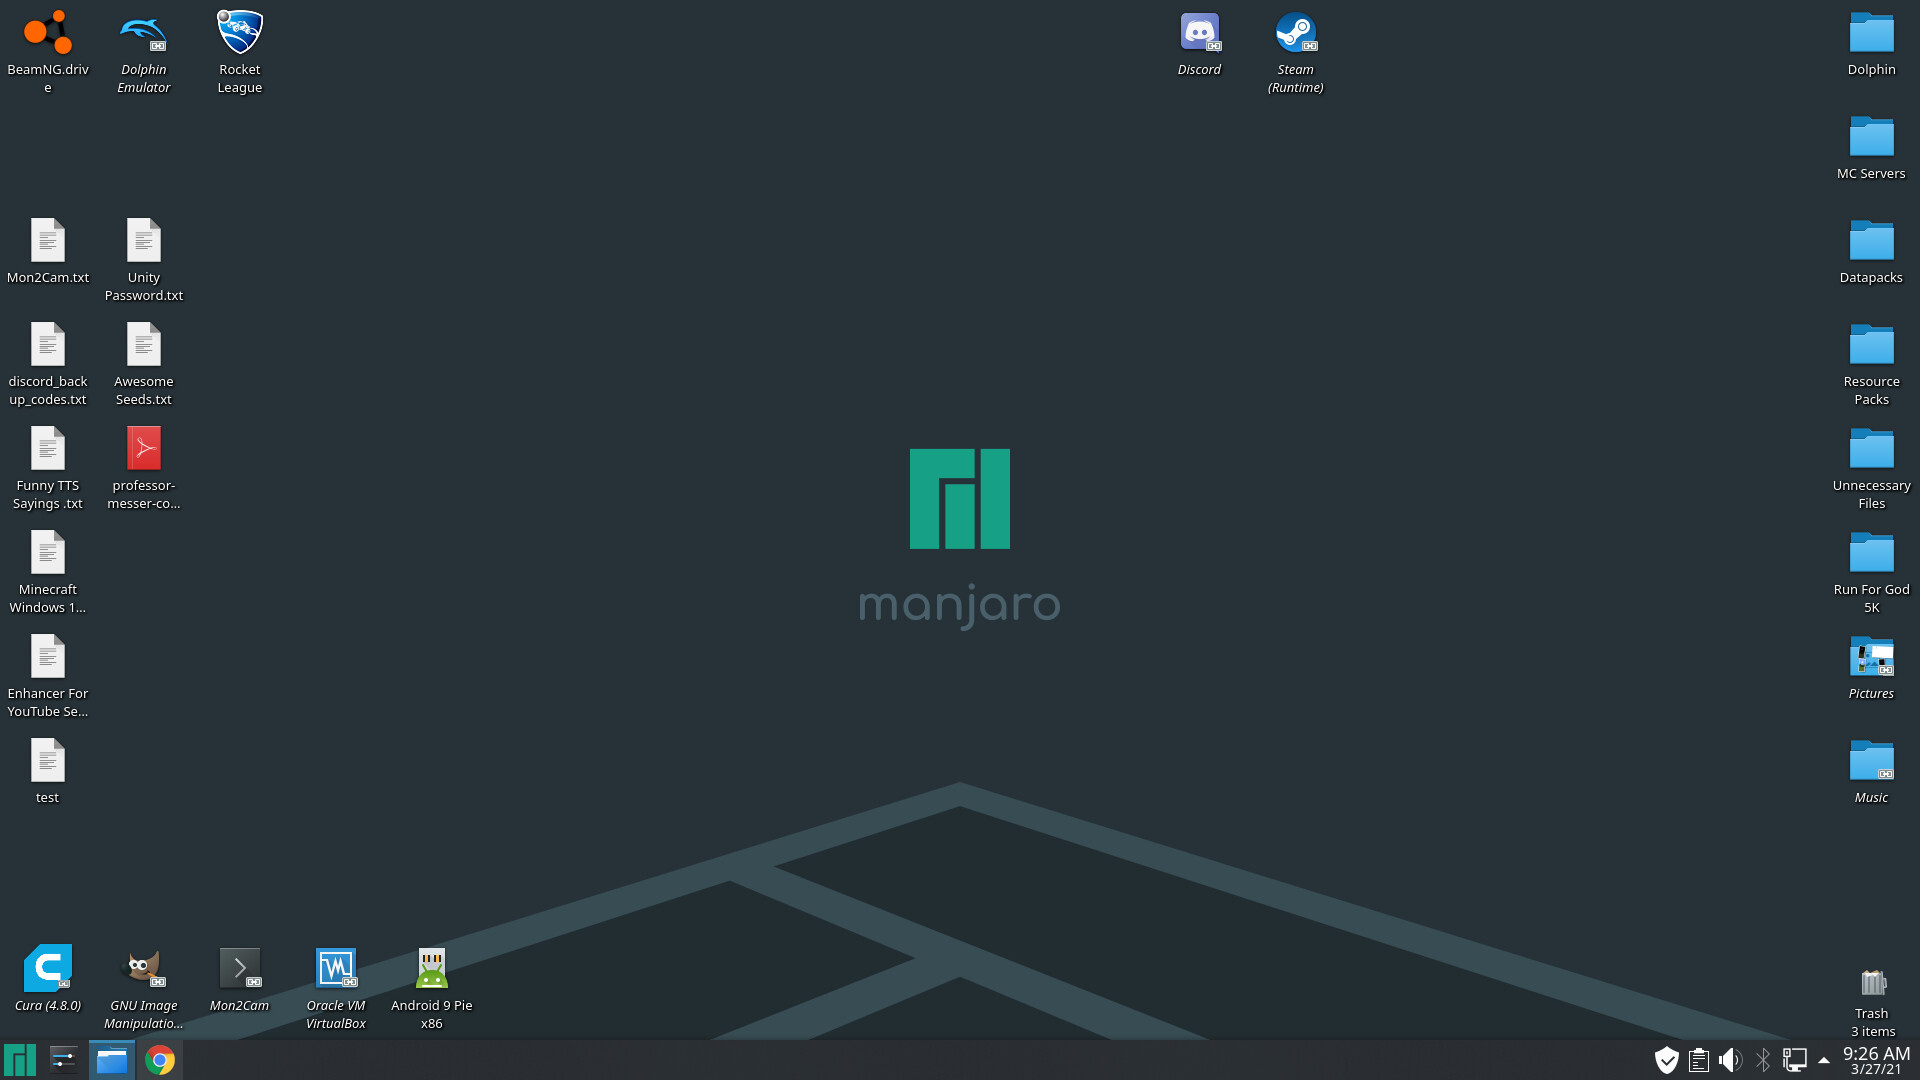 Desktop icons moving around desktop after reboot - Kde Plasma - Manjaro  Linux Forum